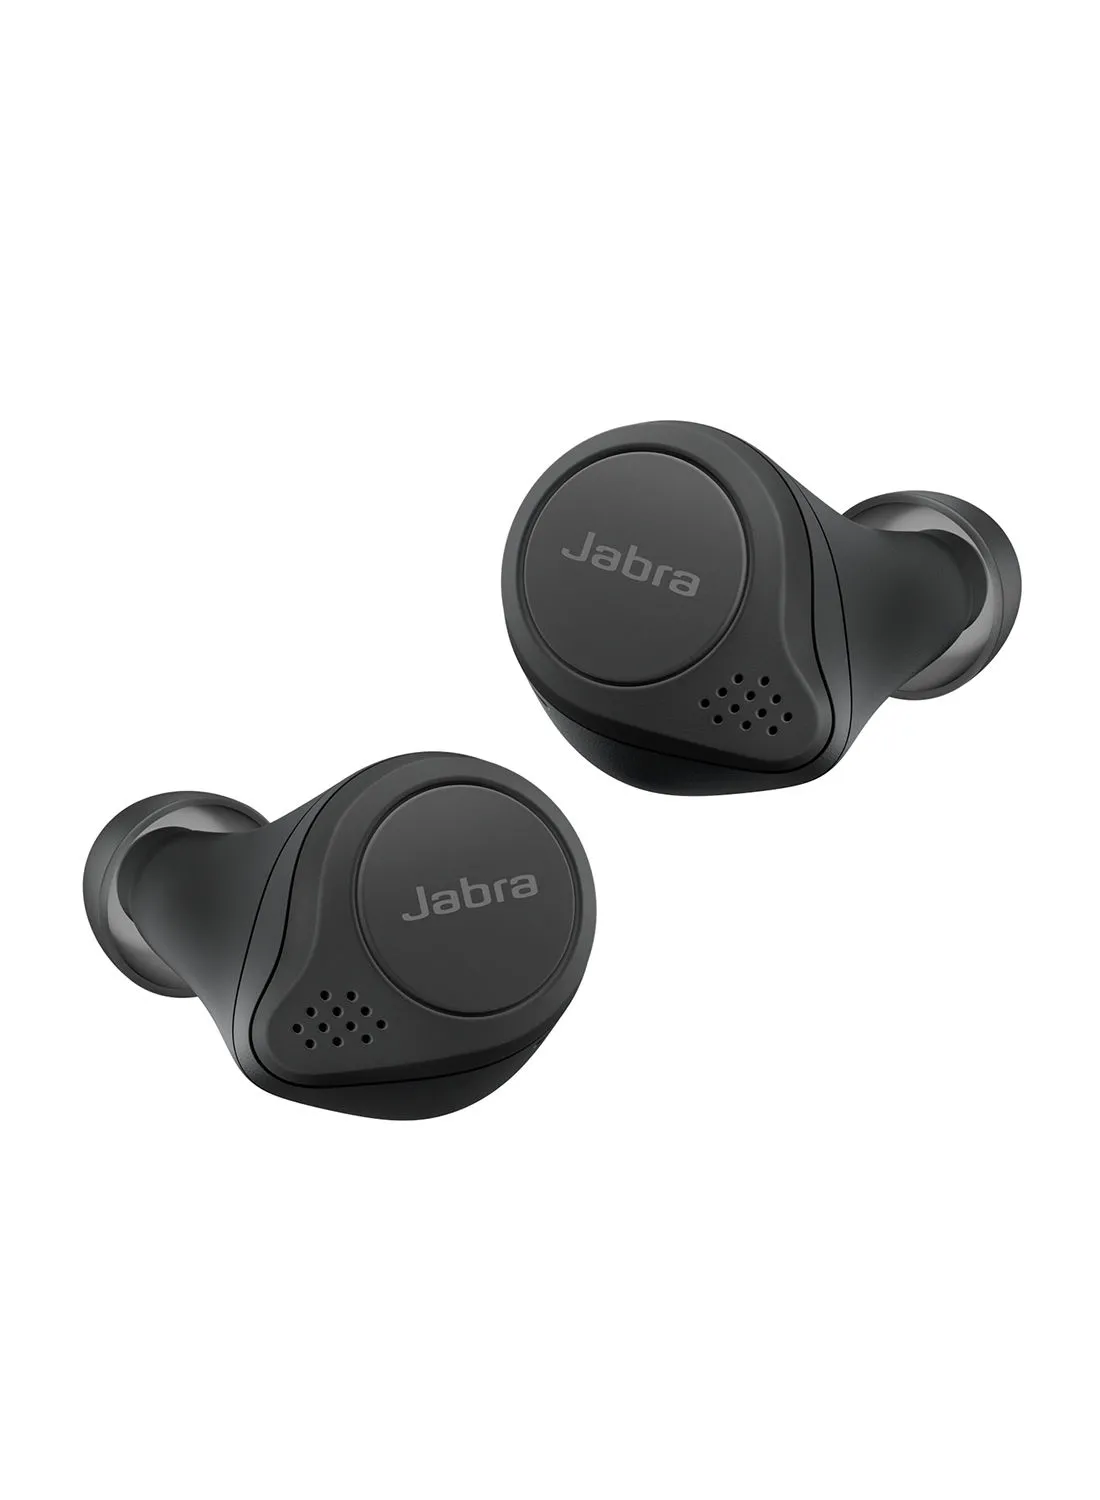 سماعات أذن Jabra Elite 75t - سماعات بلوتوث تعمل بإلغاء الضوضاء النشطة مع عمر بطارية طويل للمكالمات والموسيقى اللاسلكية الحقيقية - أسود